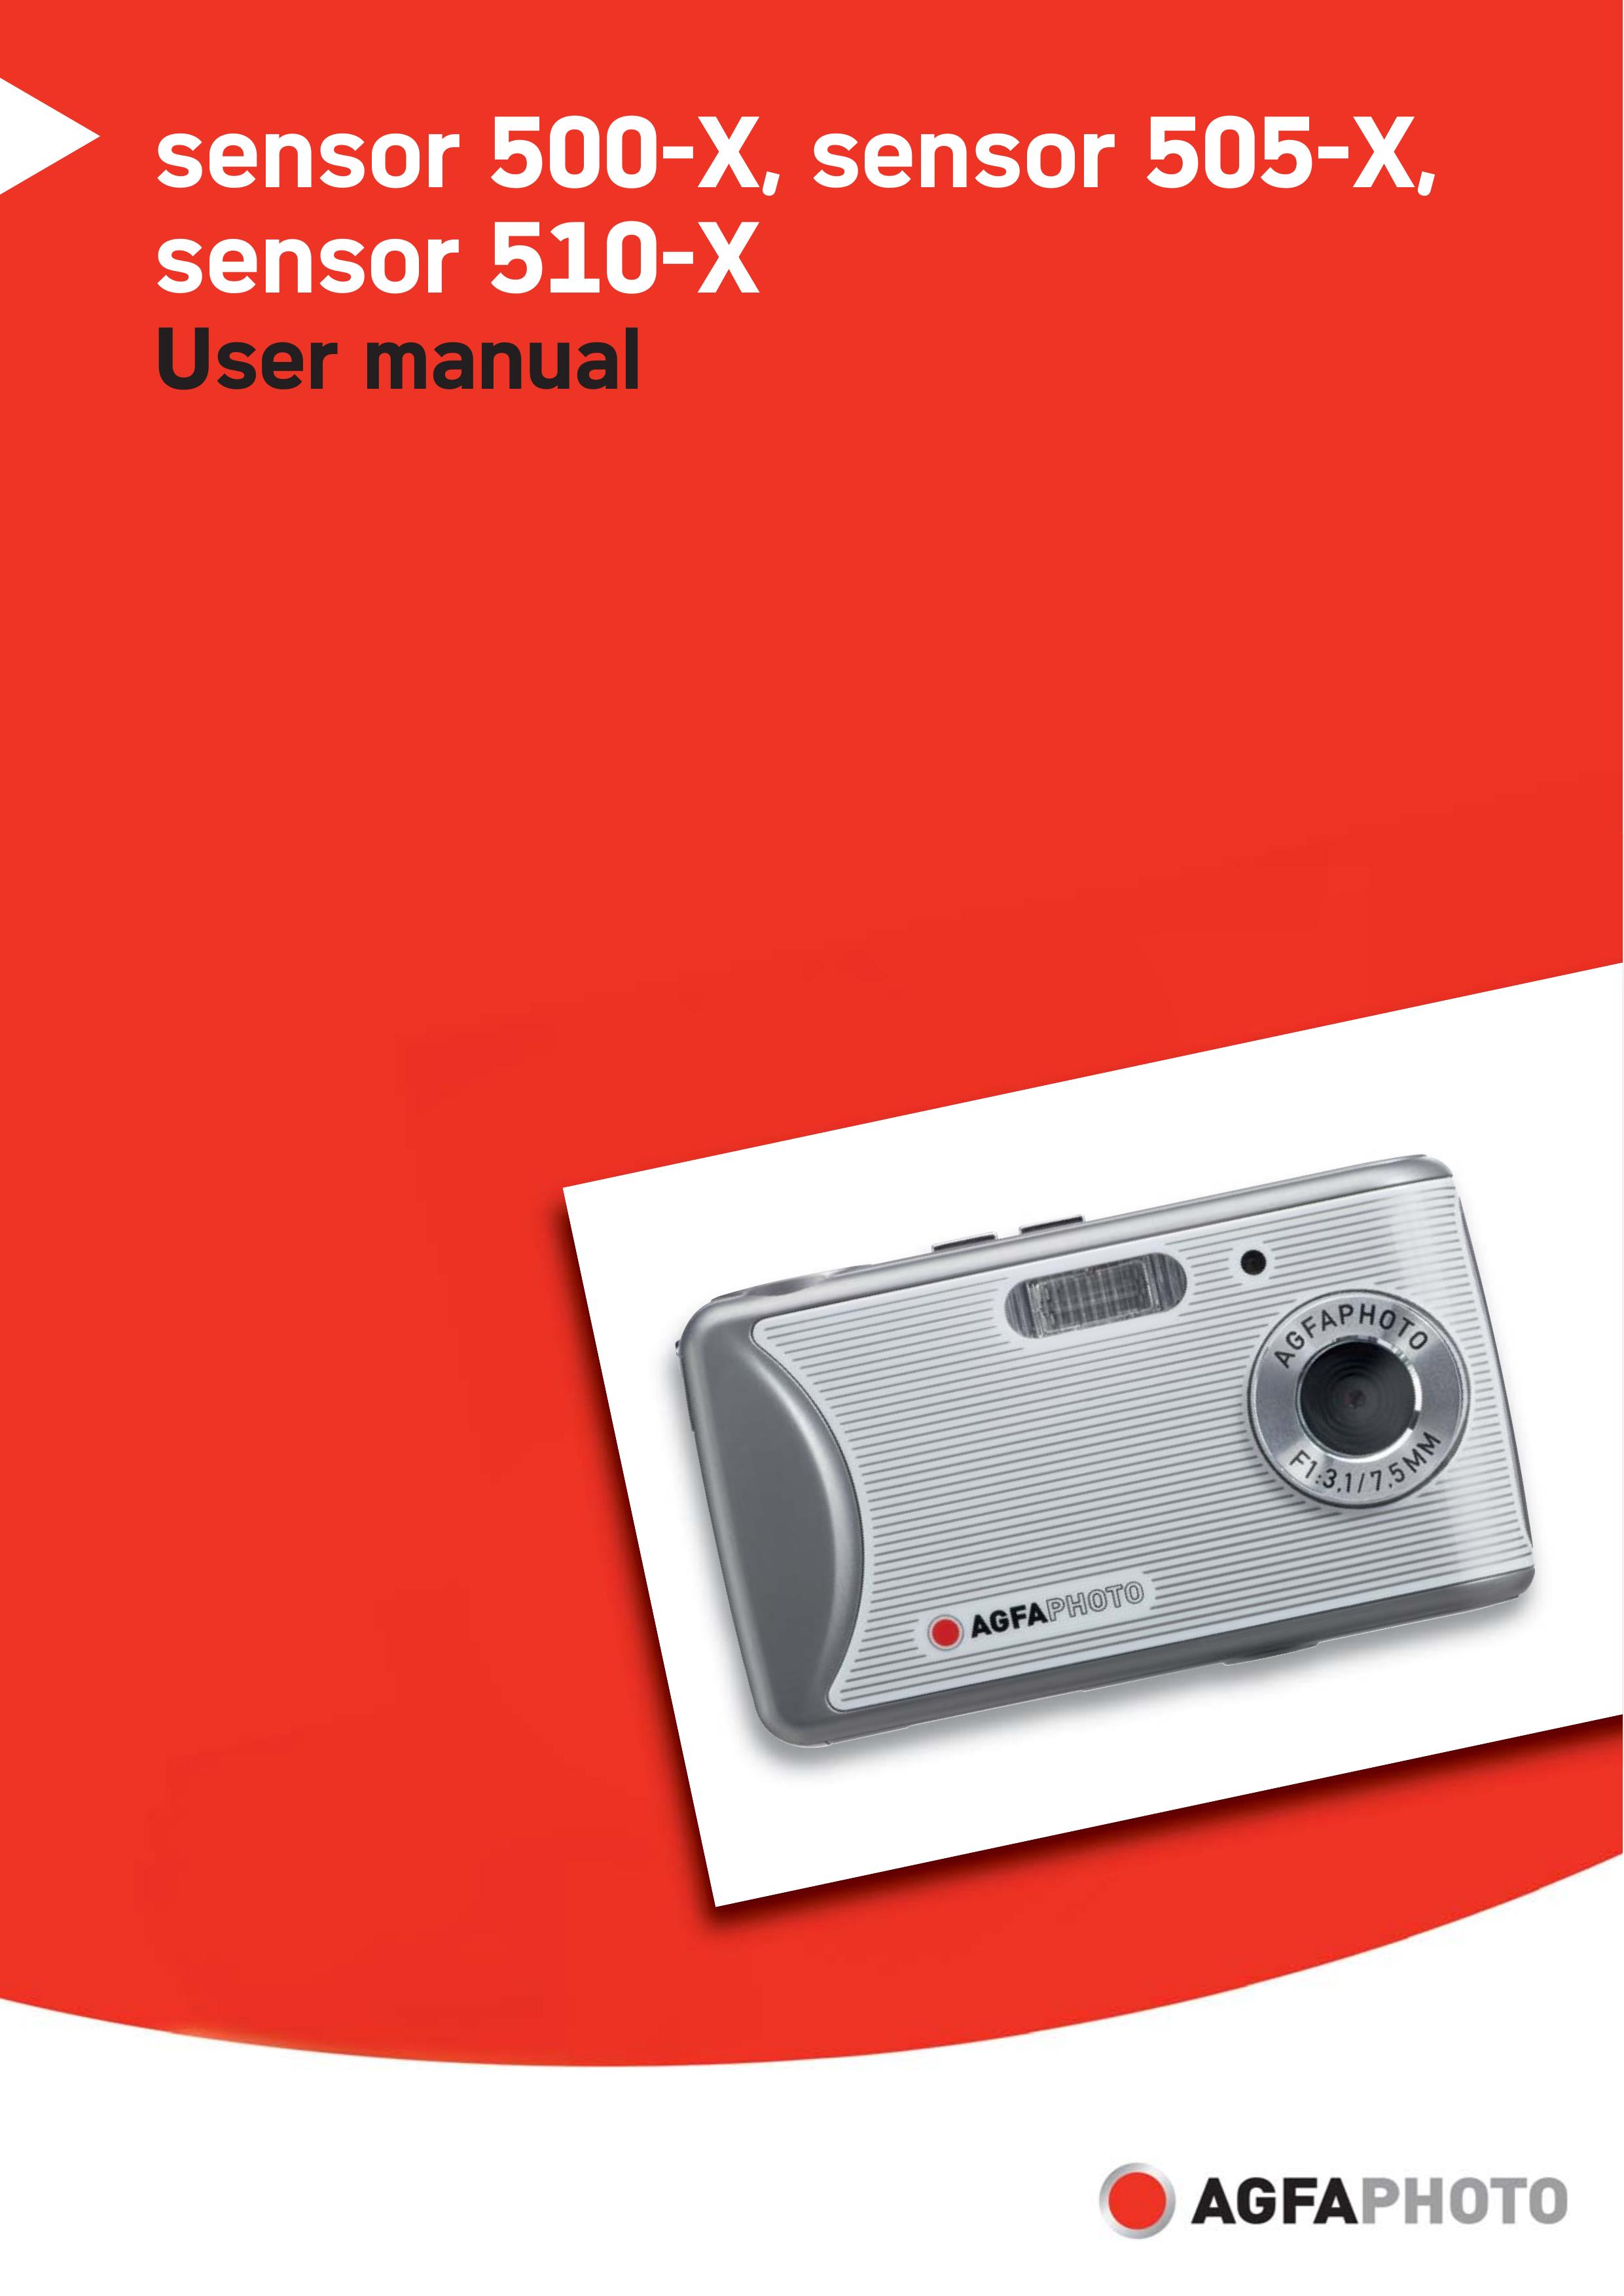 AGFA 510-X Digital Camera User Manual